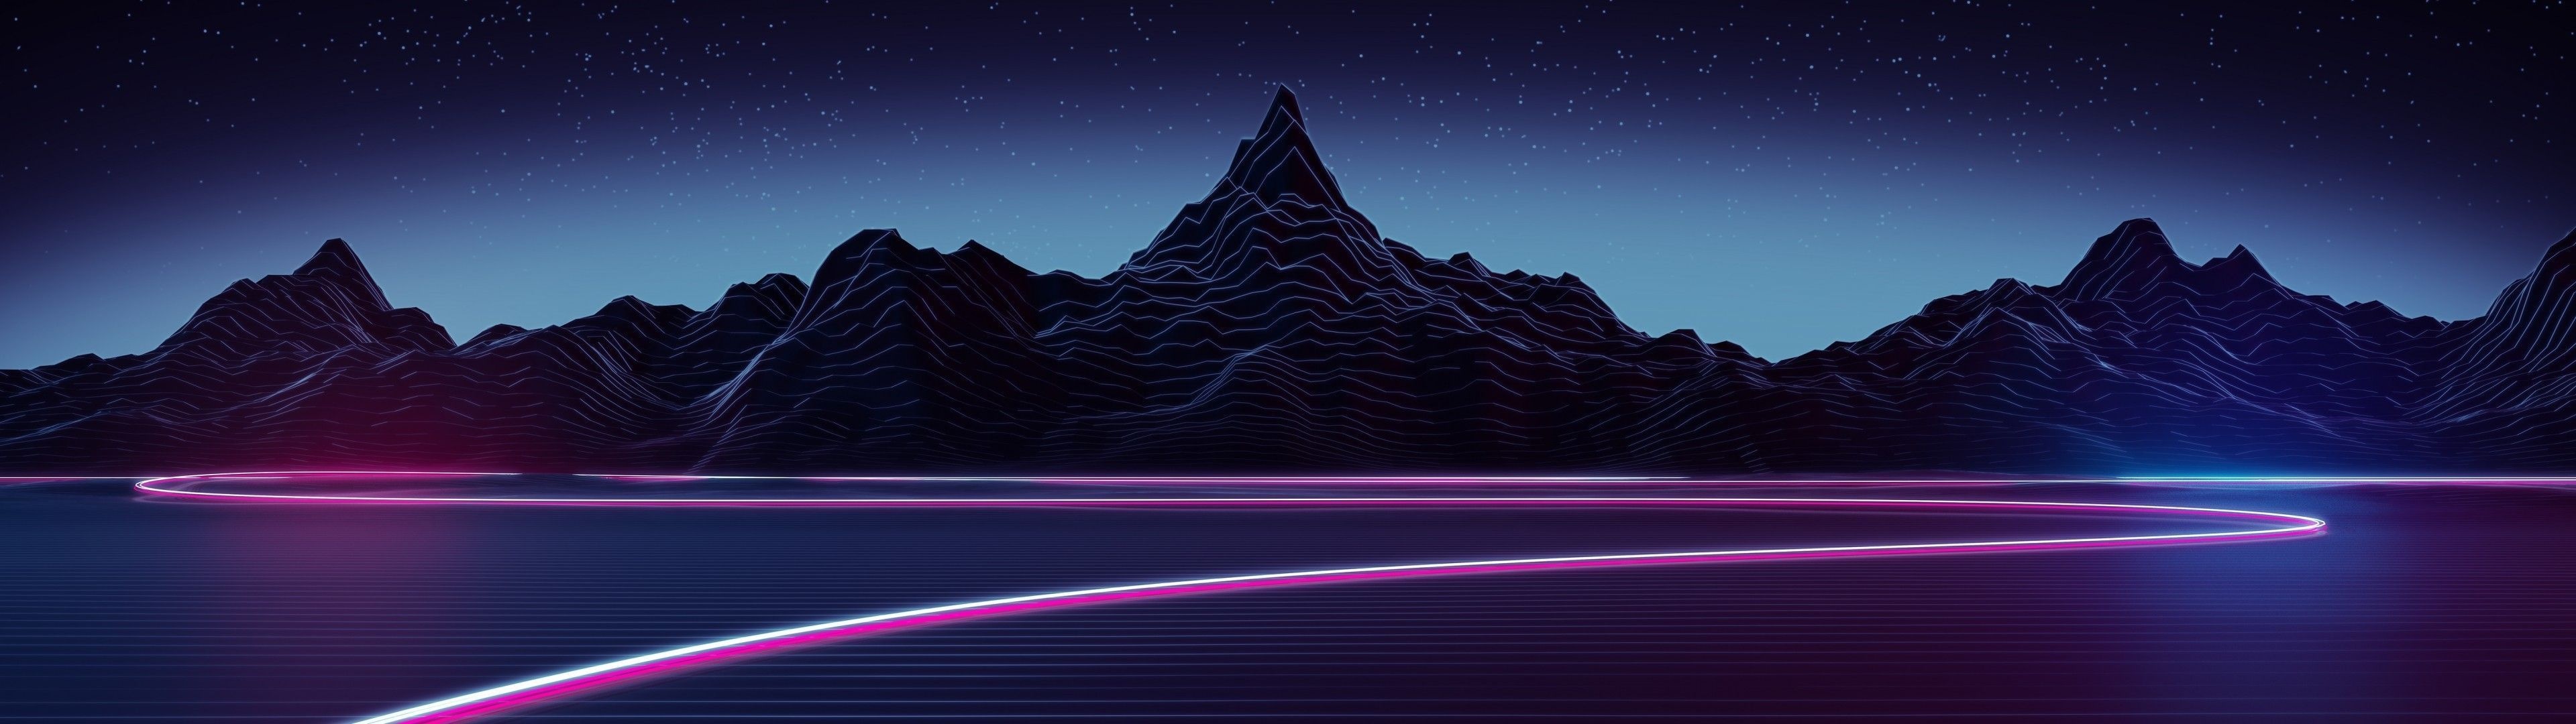 Mountain, Neon Abstract Wallpaper, 3840x1080 Dual Screen Desktop